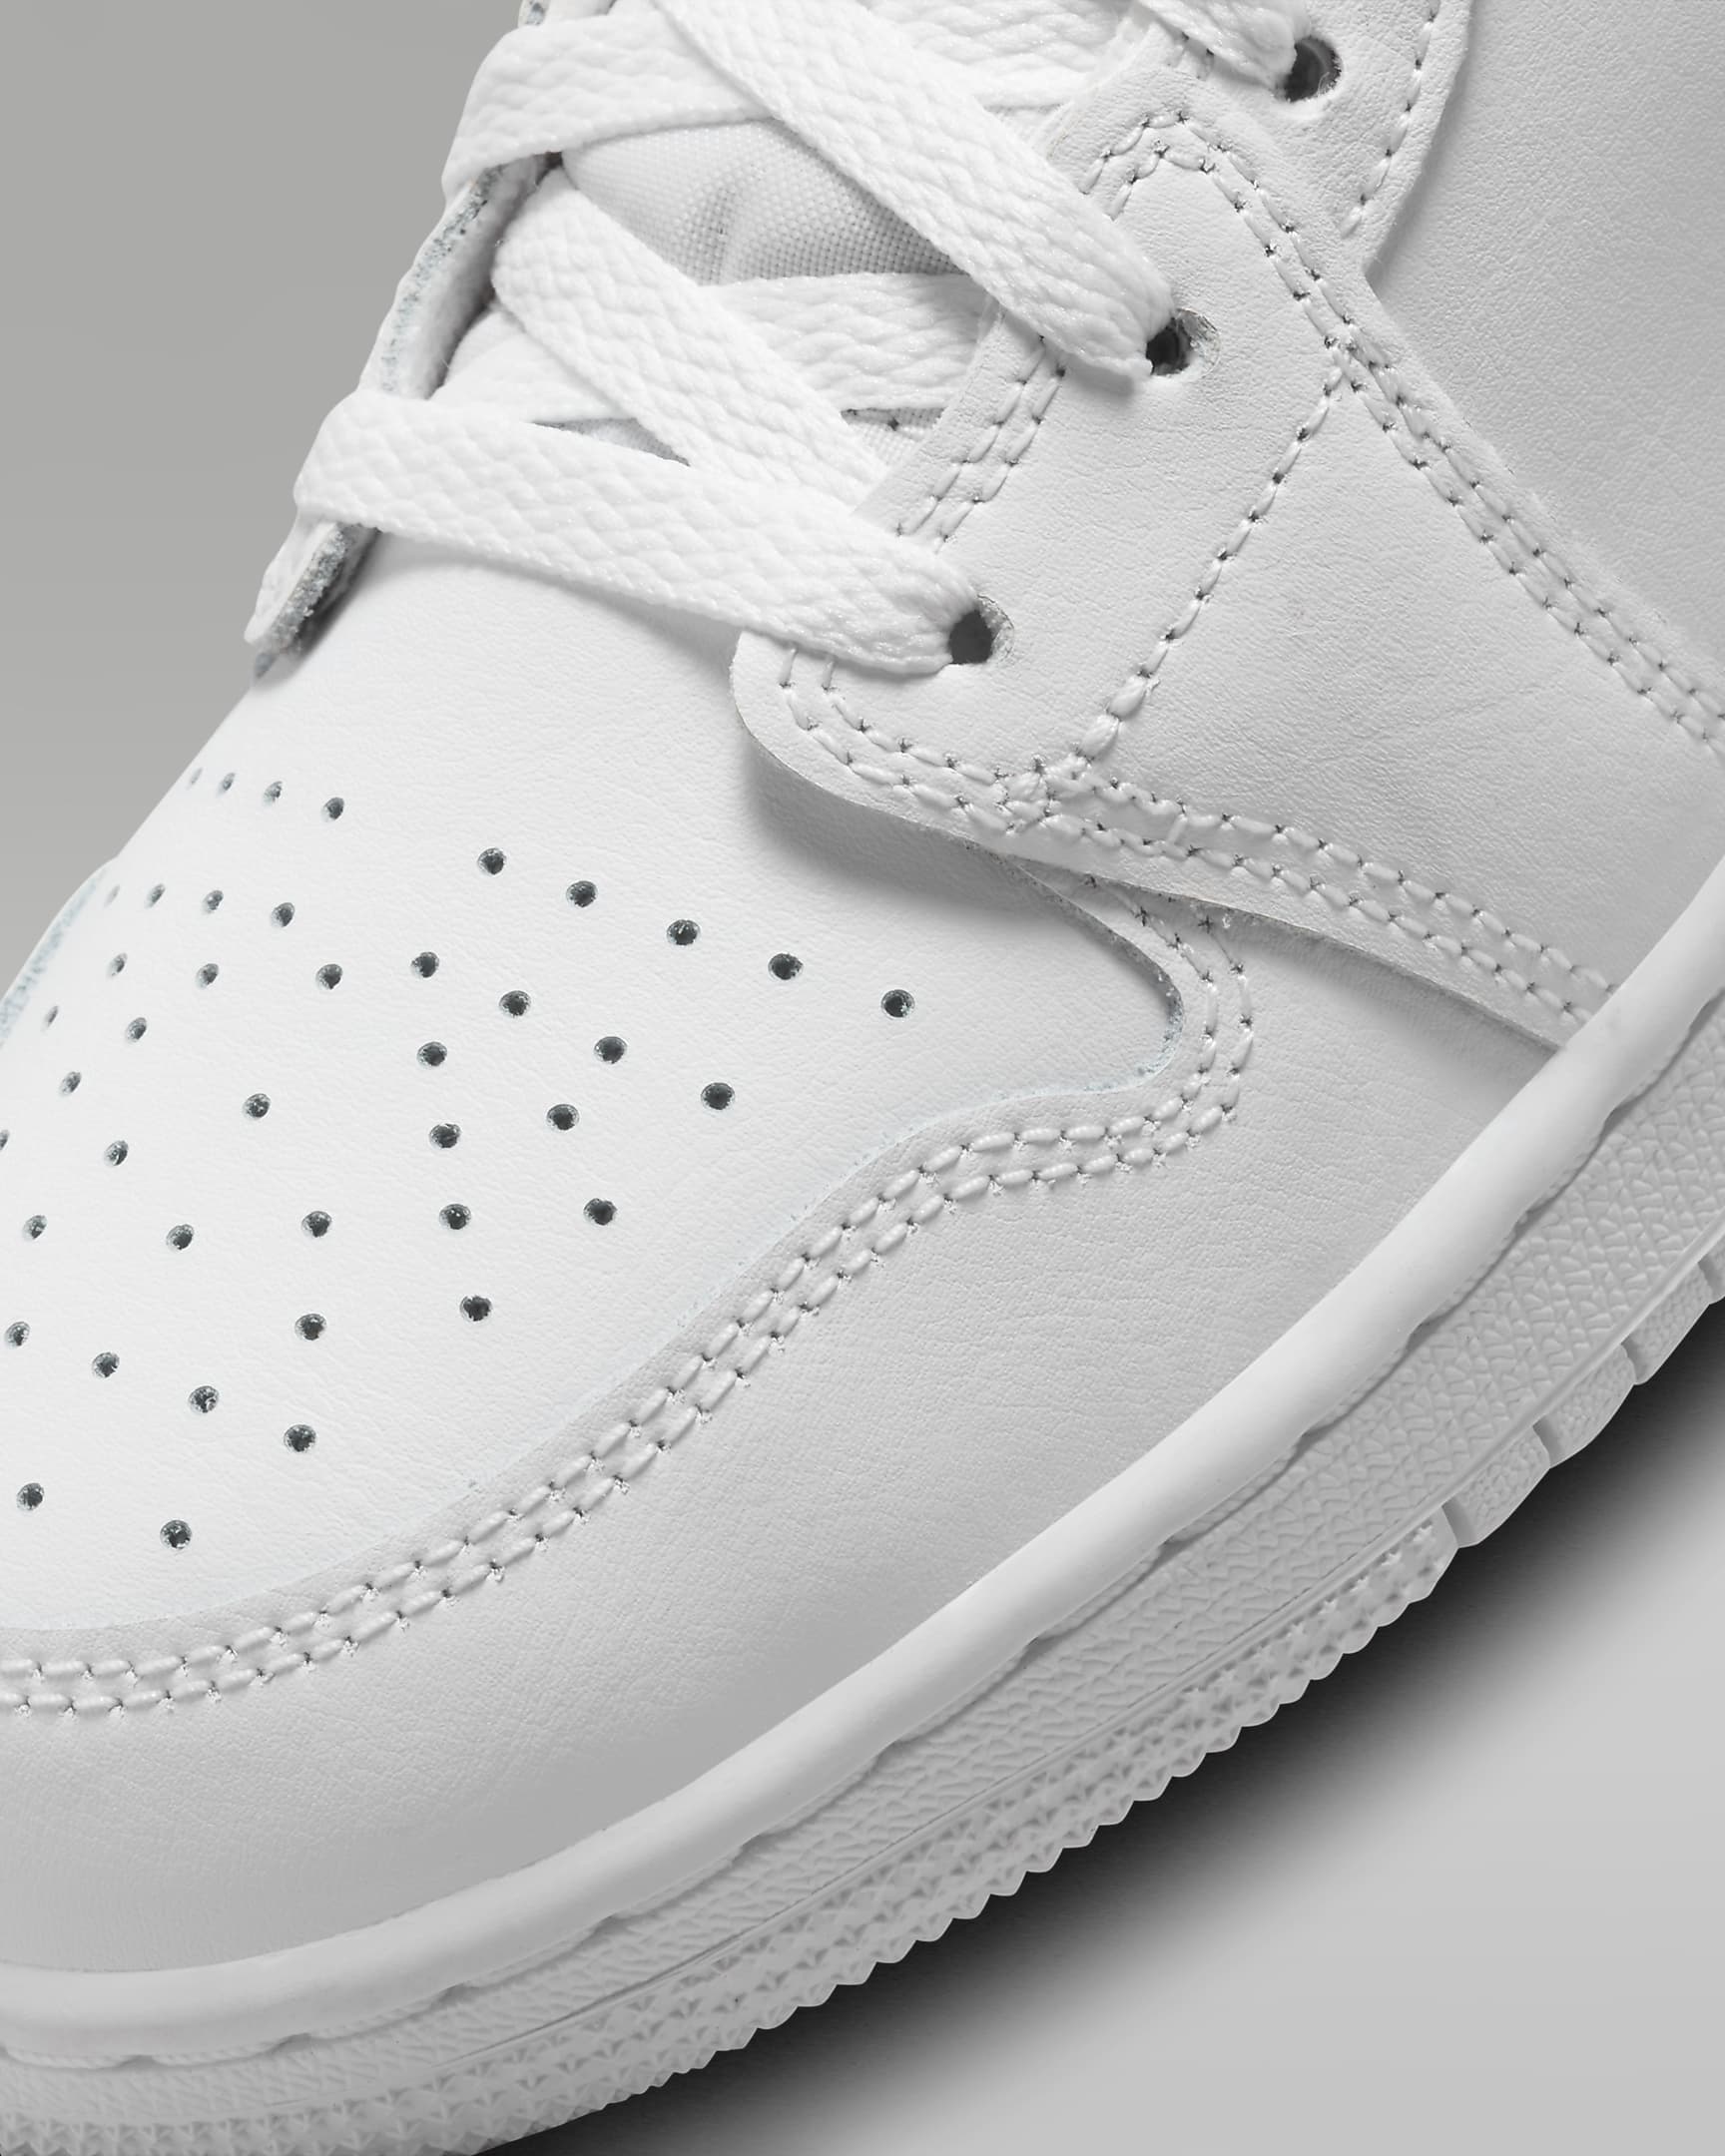 Jordan 1 Mid Older Kids' Shoes - White/White/White